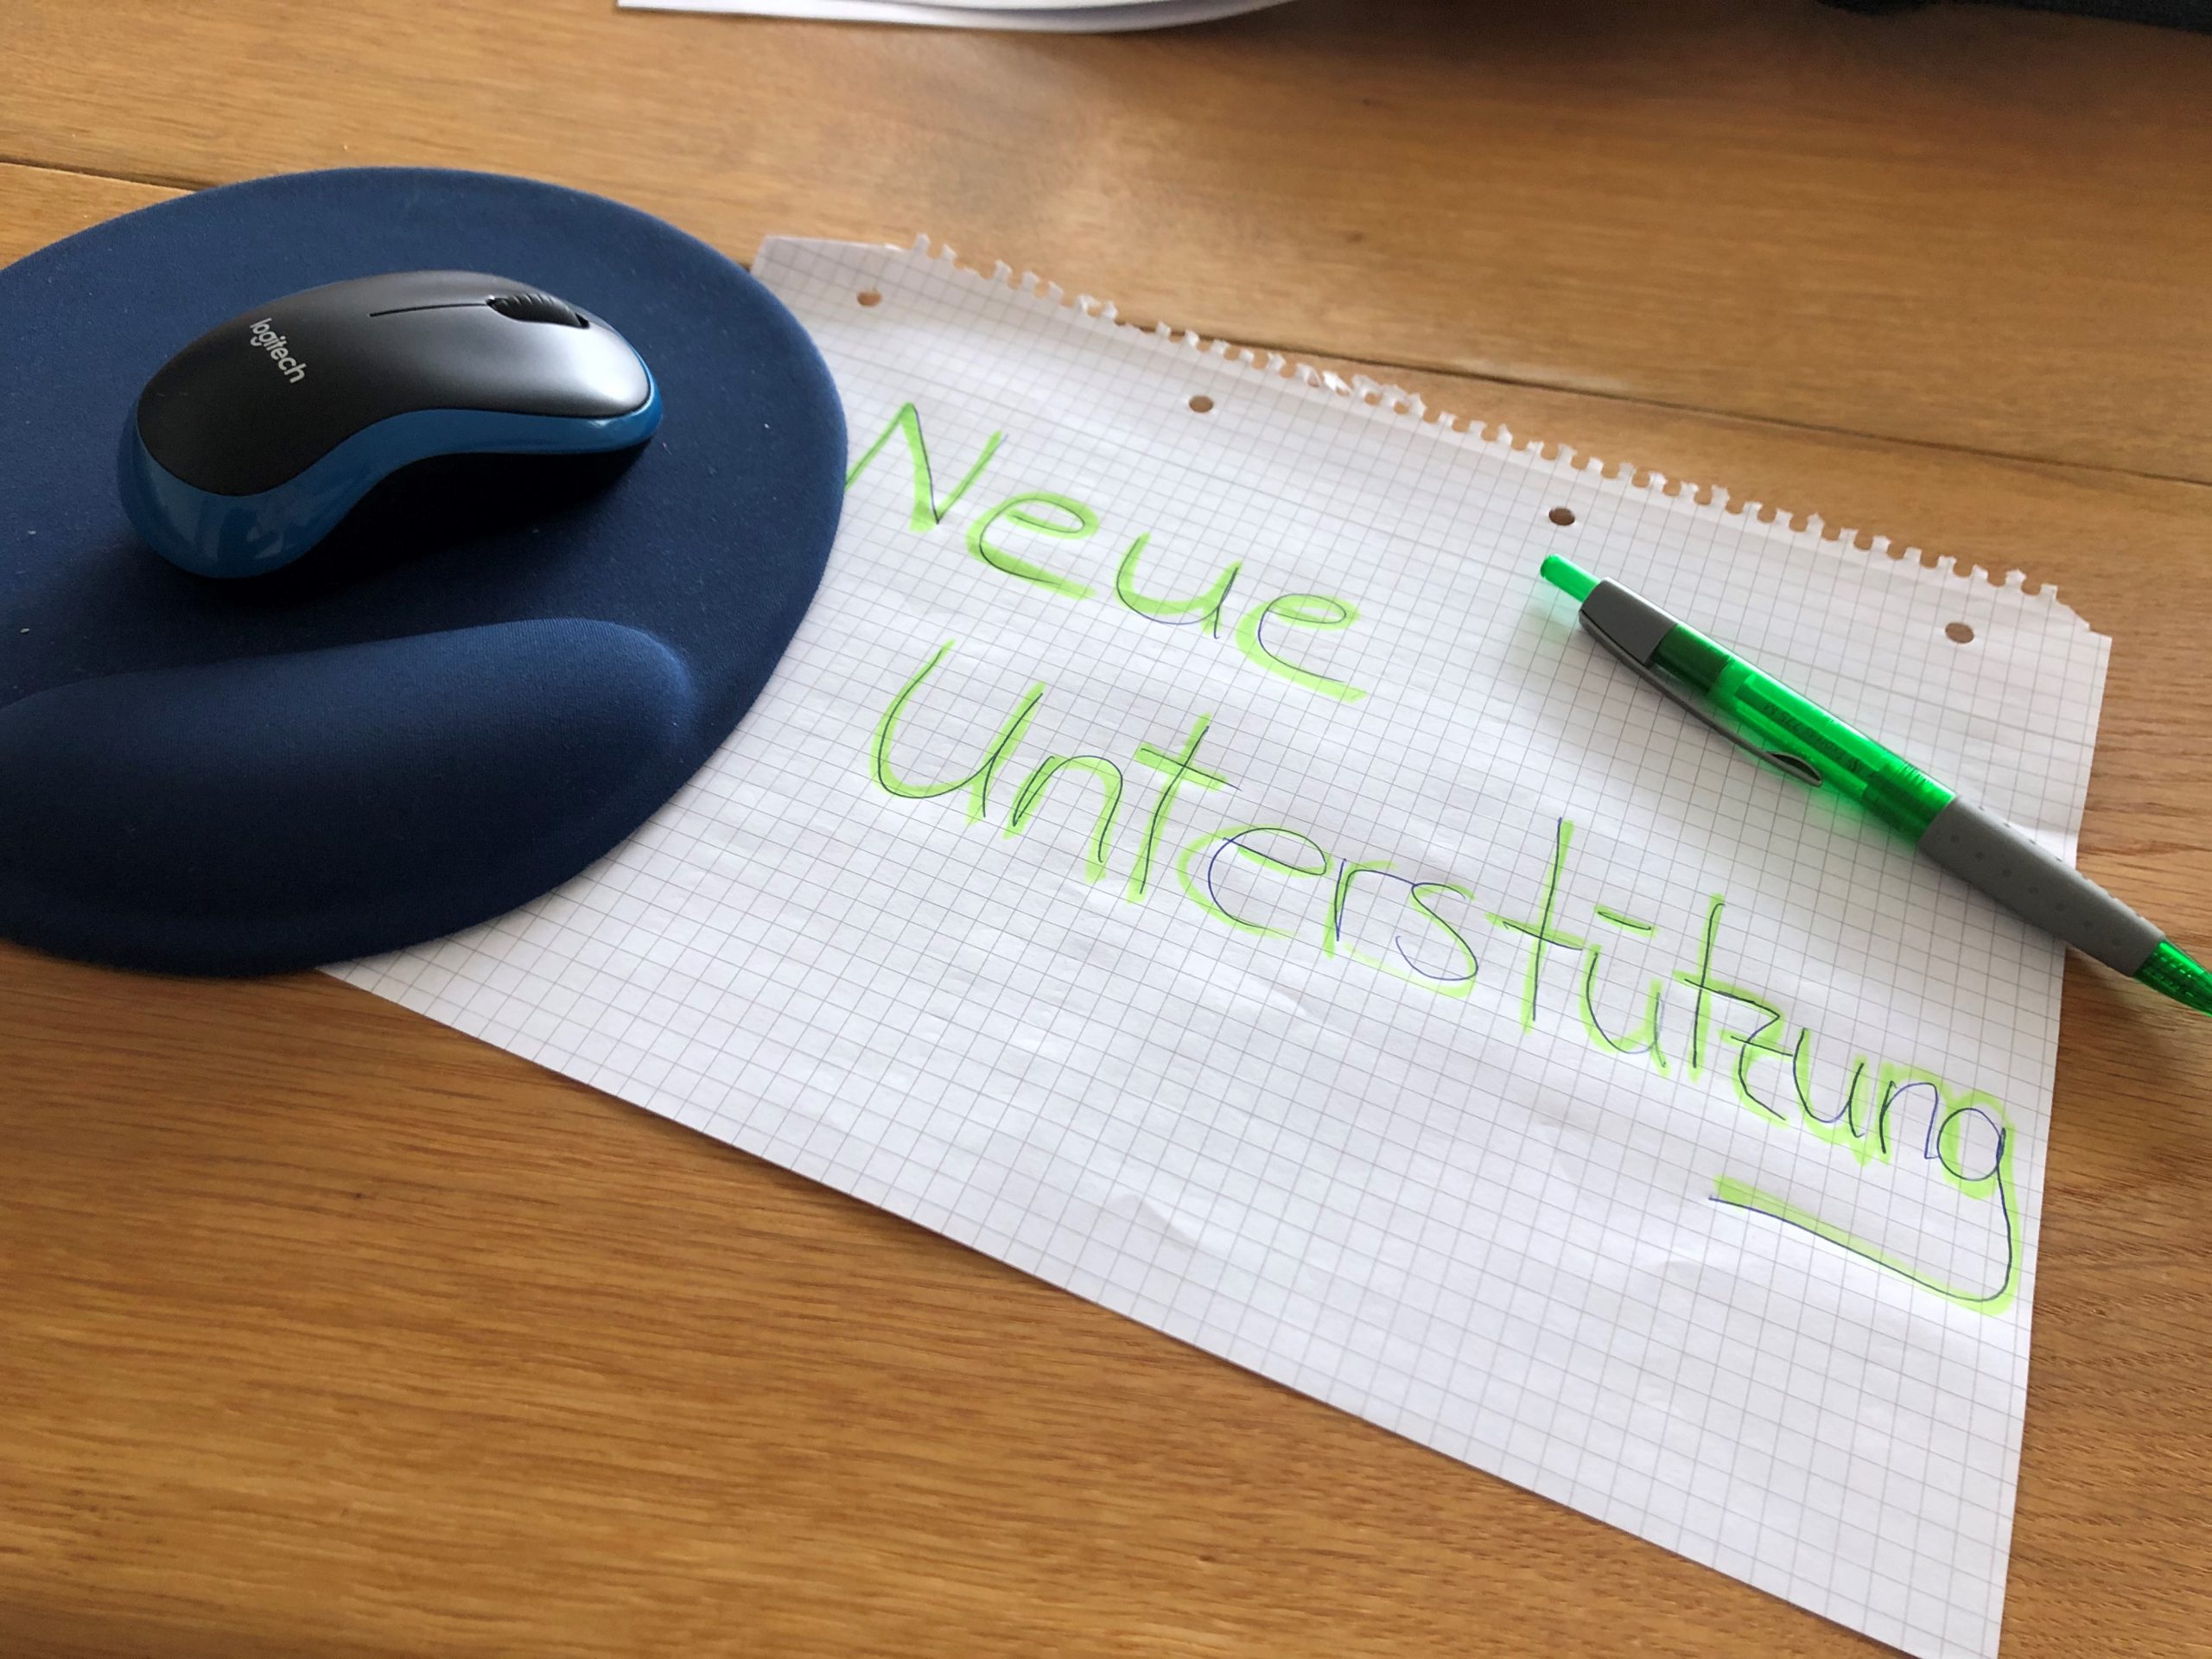 Auf dem Bild ist ein blaues Mousepad zu sehen. Darauf befindet sich eine Computer-Maus. Unter dem Mouspad ist ein kariertes Blatt festgeklemmt. Auf dem Blatt steht: "Neue Unterstützung". Auf dem Blatt liegt oben rechts ein grüner Kugelschreiber.